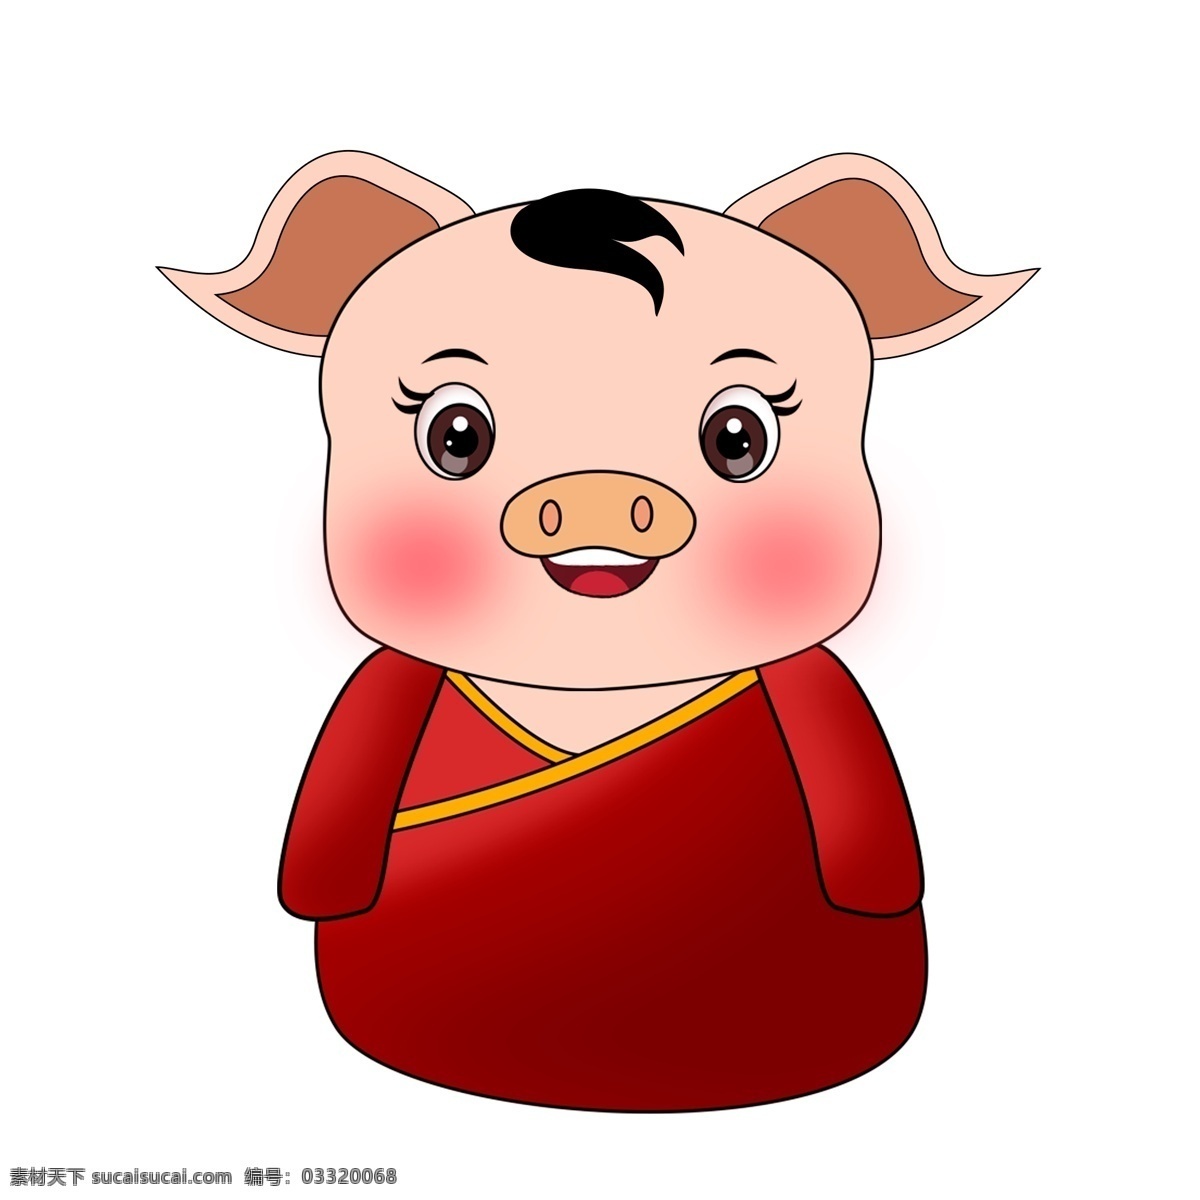 中国 风 猪 小孩 简约 卡通 可爱 小猪 红色 中国风 2019年 小猪形象 猪年形象